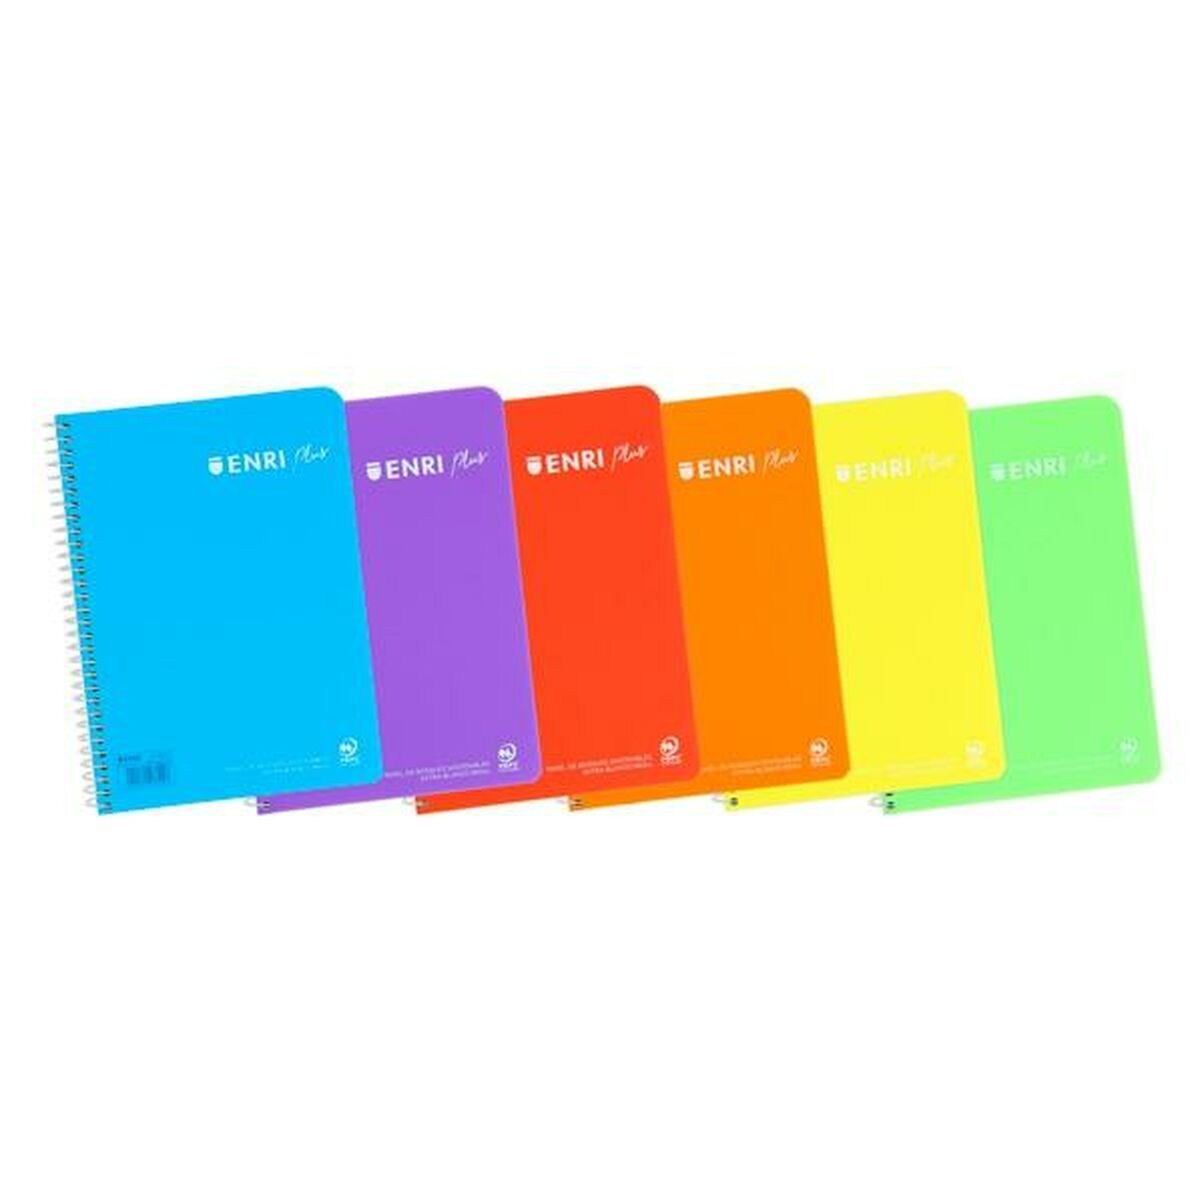 Notebook ENRI Soft cover 80 Sheets Quarto (5 Units)